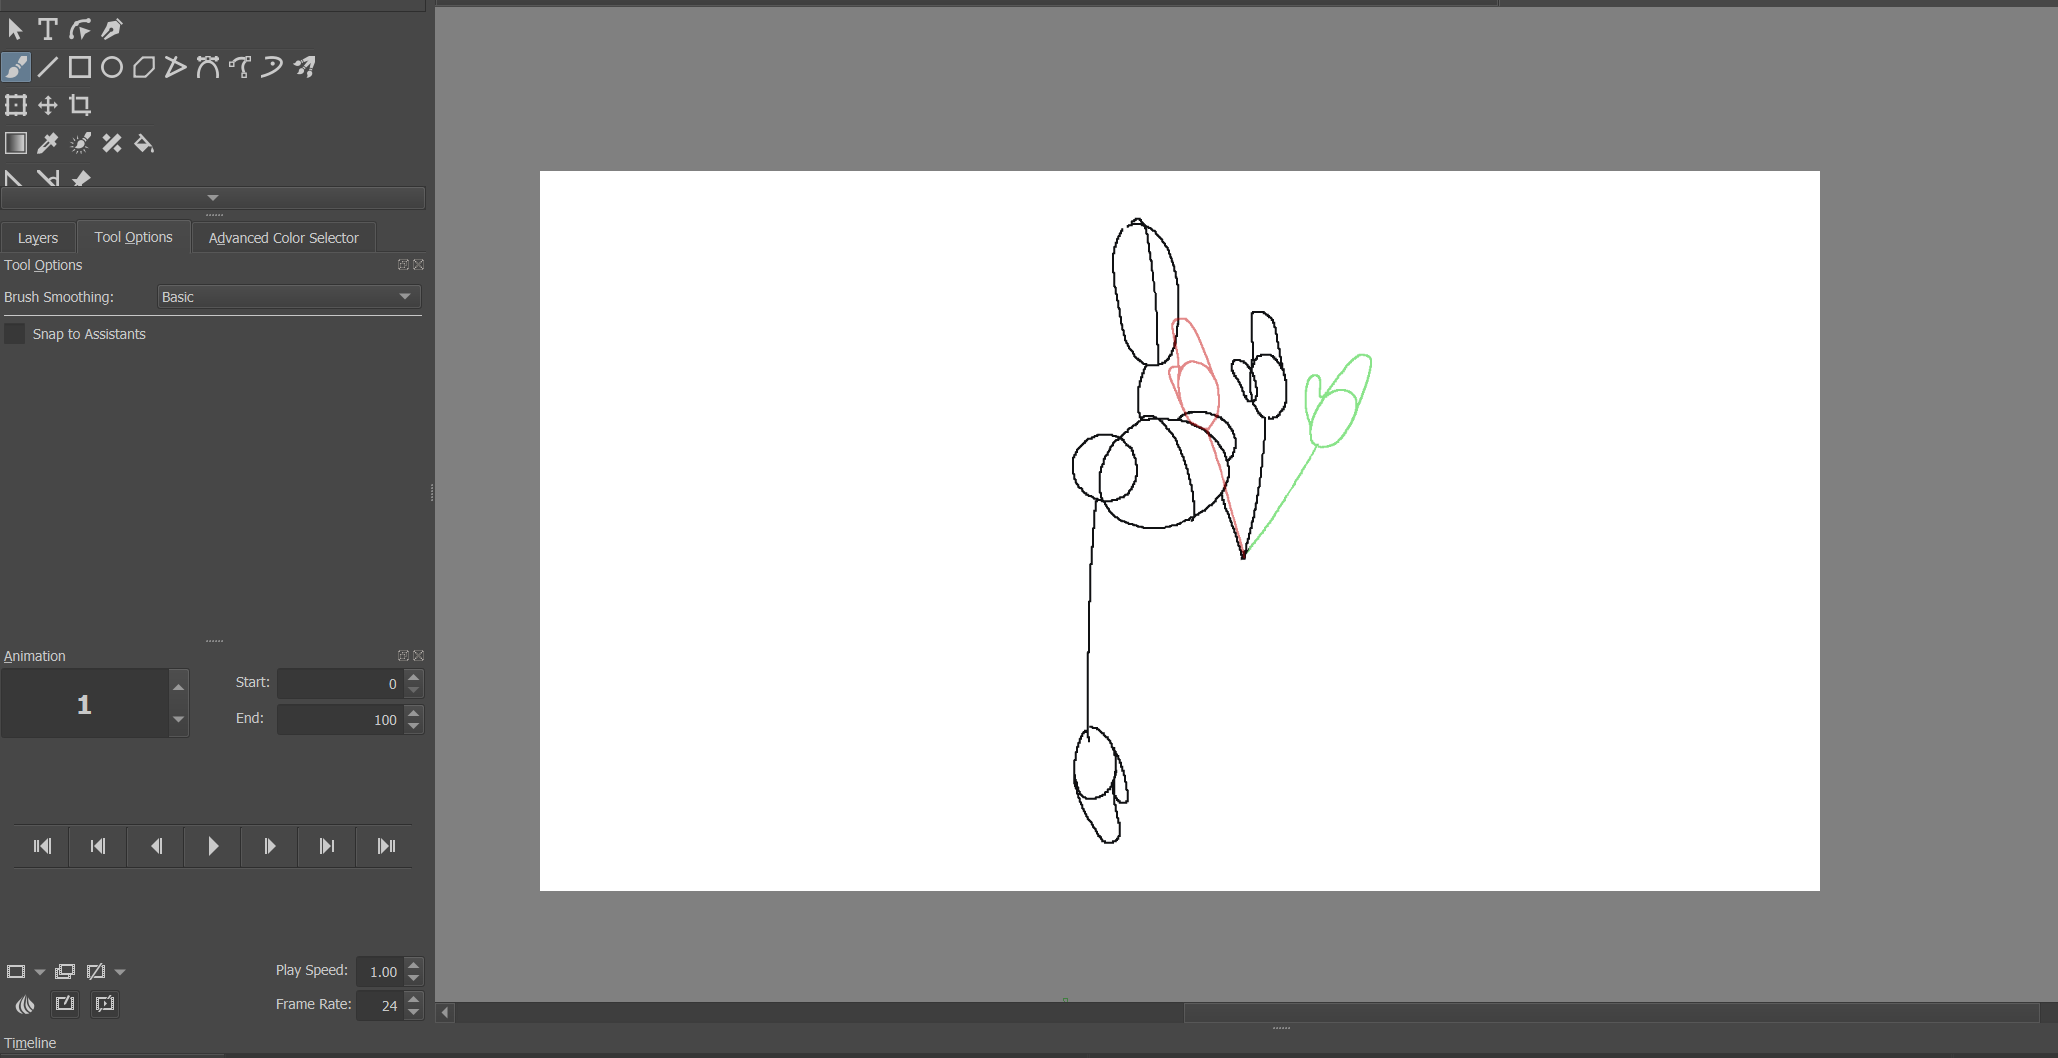 2d animation programs 1 - Come animare in Krita: una guida per principianti per iniziare